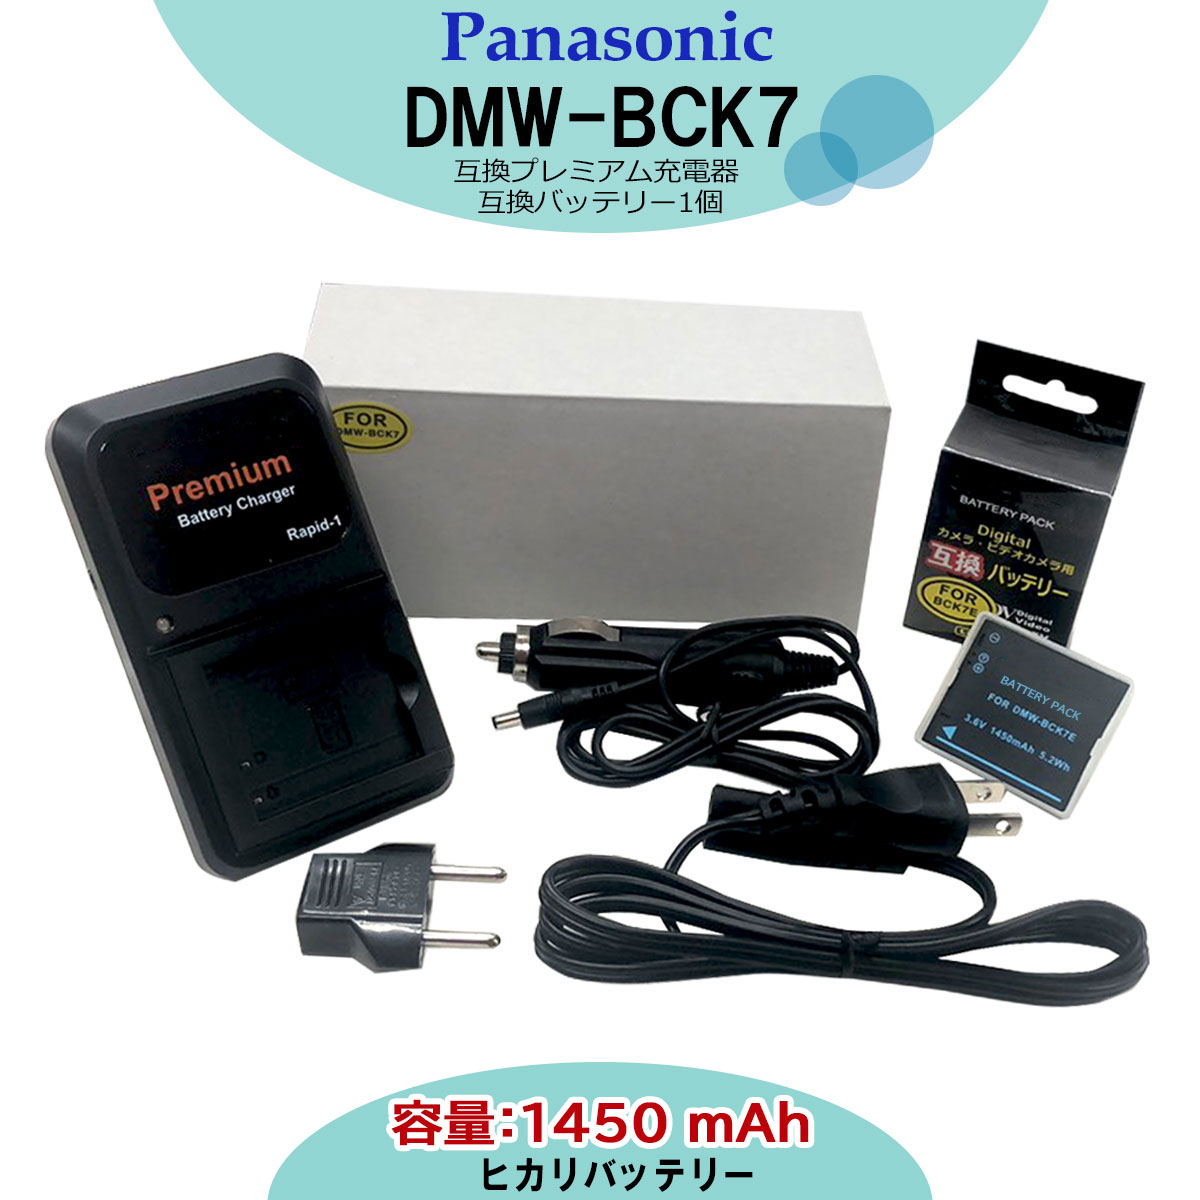 超格安一点 大人気定番商品 互換充電器 カメラ本体で残量表示可能コンセント充電可能 海外でも使用可能純正品にも対応 パナソニック PANASONIC DMW-BCK7 互換バッテリー 1個と プレミアム互換充電器の 2点セット DMC-FH2 DMC-FH24 DMC-FH25 DMC-FH25A DMC-FH25GK DMC-FH4GK DMC-FH4K DMC-FH4P DMC-FH4S DMC-FH5 DMC-FH5N DMC-FH5P DMC-FH5S summitbrisbane.com.au summitbrisbane.com.au